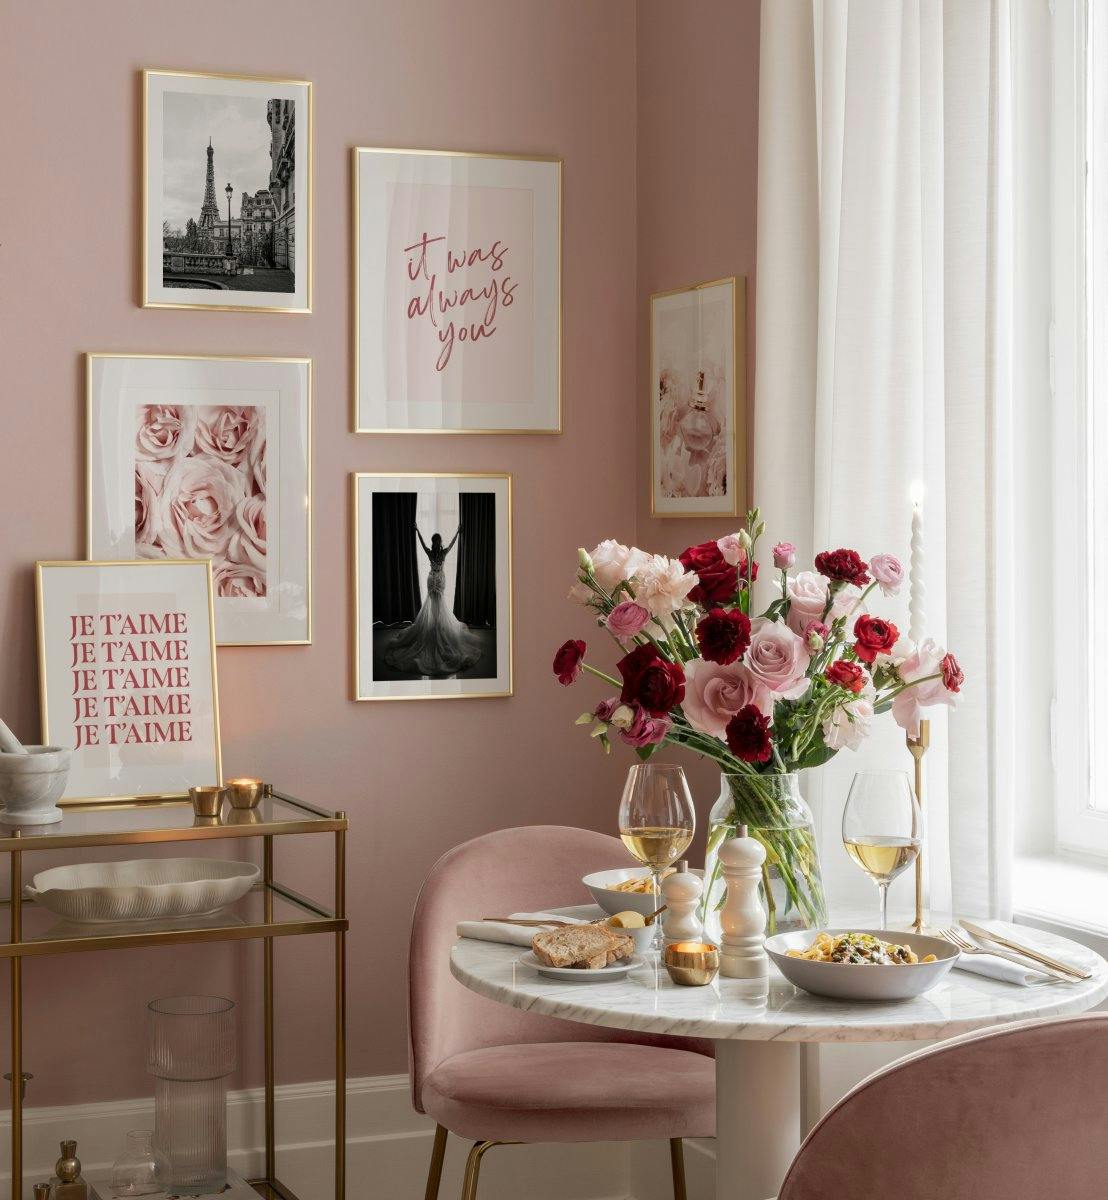 핑크와 모노크롬 포토그래피 아트 포스터가 어우러져 사랑스럽고 편안한 느낌을 주는 거실 또는 침실을 위한 갤러리월